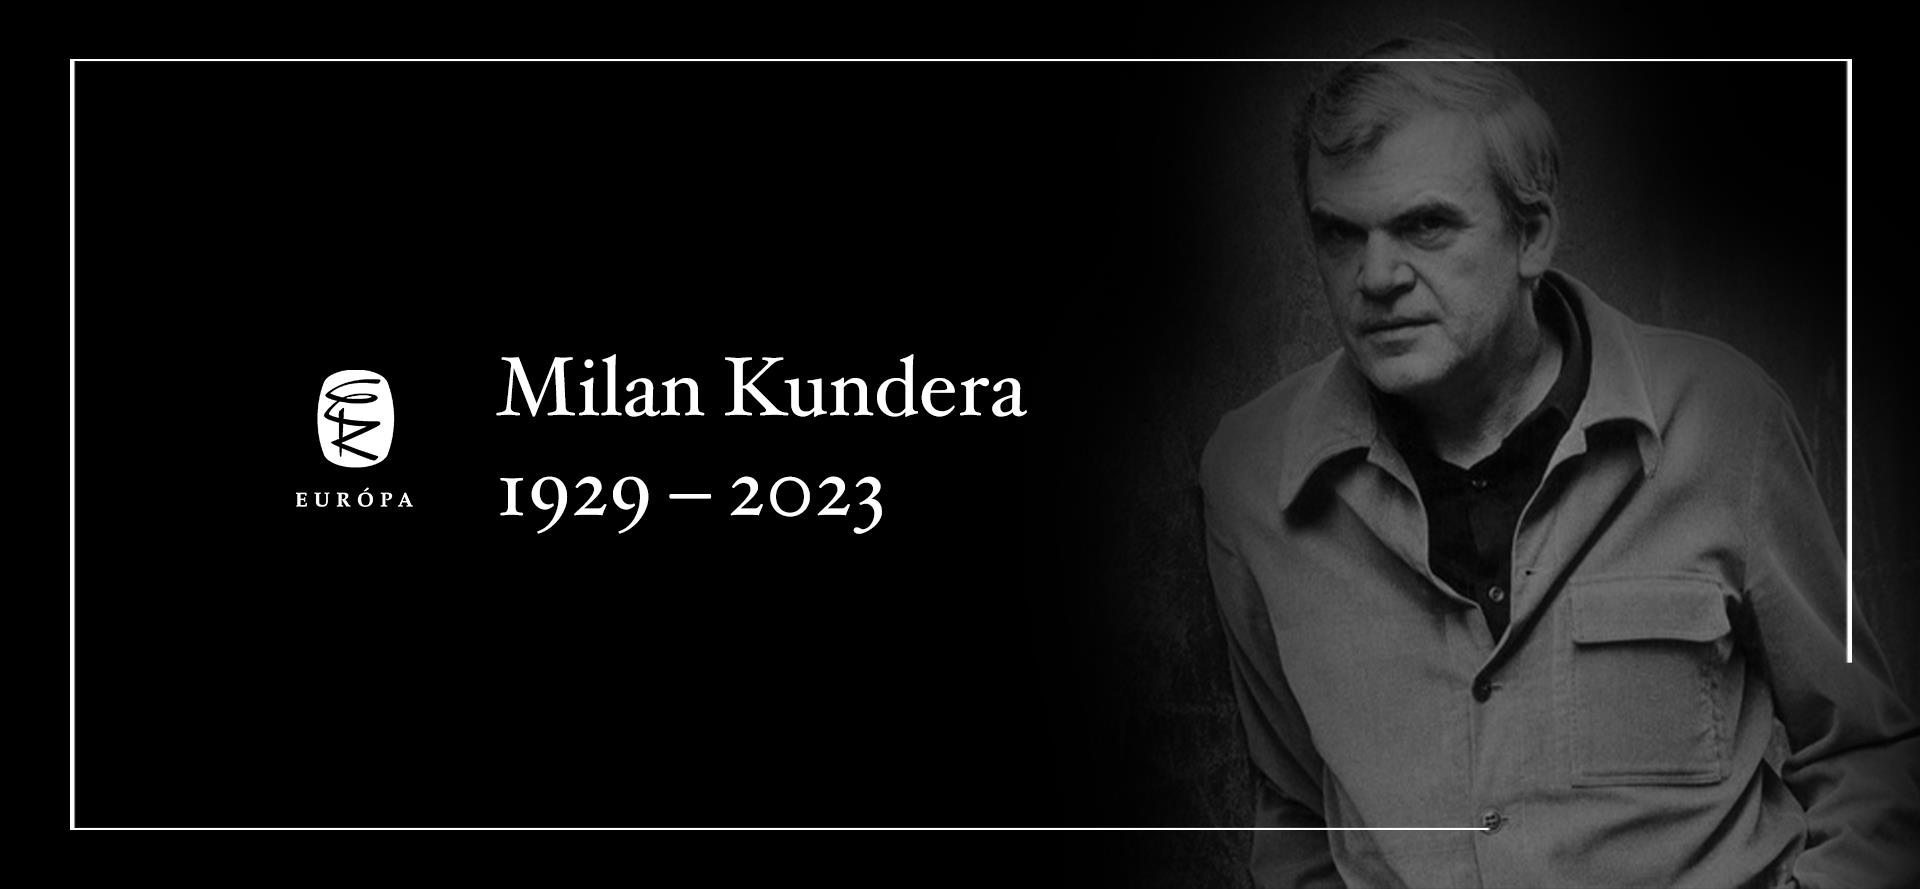 94 éves korában elhunyt Milan Kundera